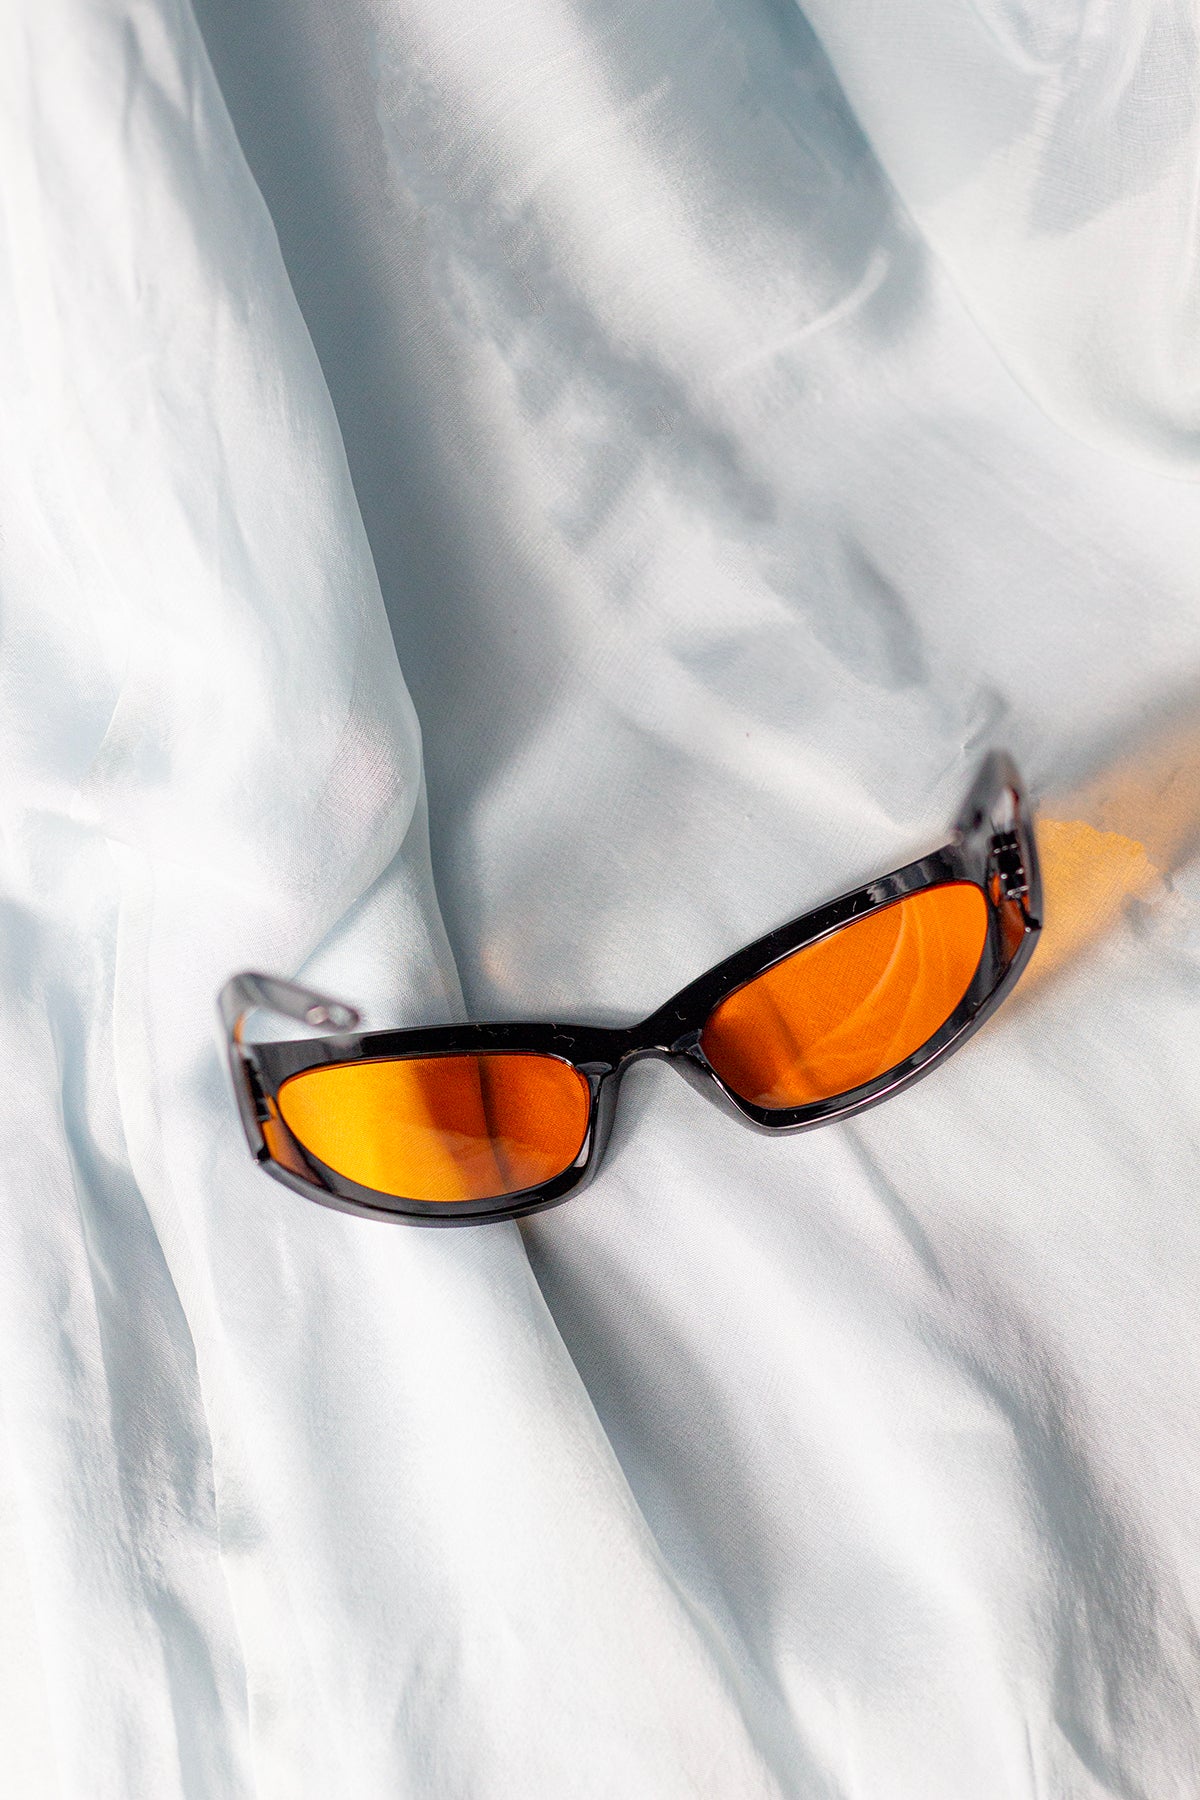 Wrap Around Narrow Sunglasses - Sugar + Style